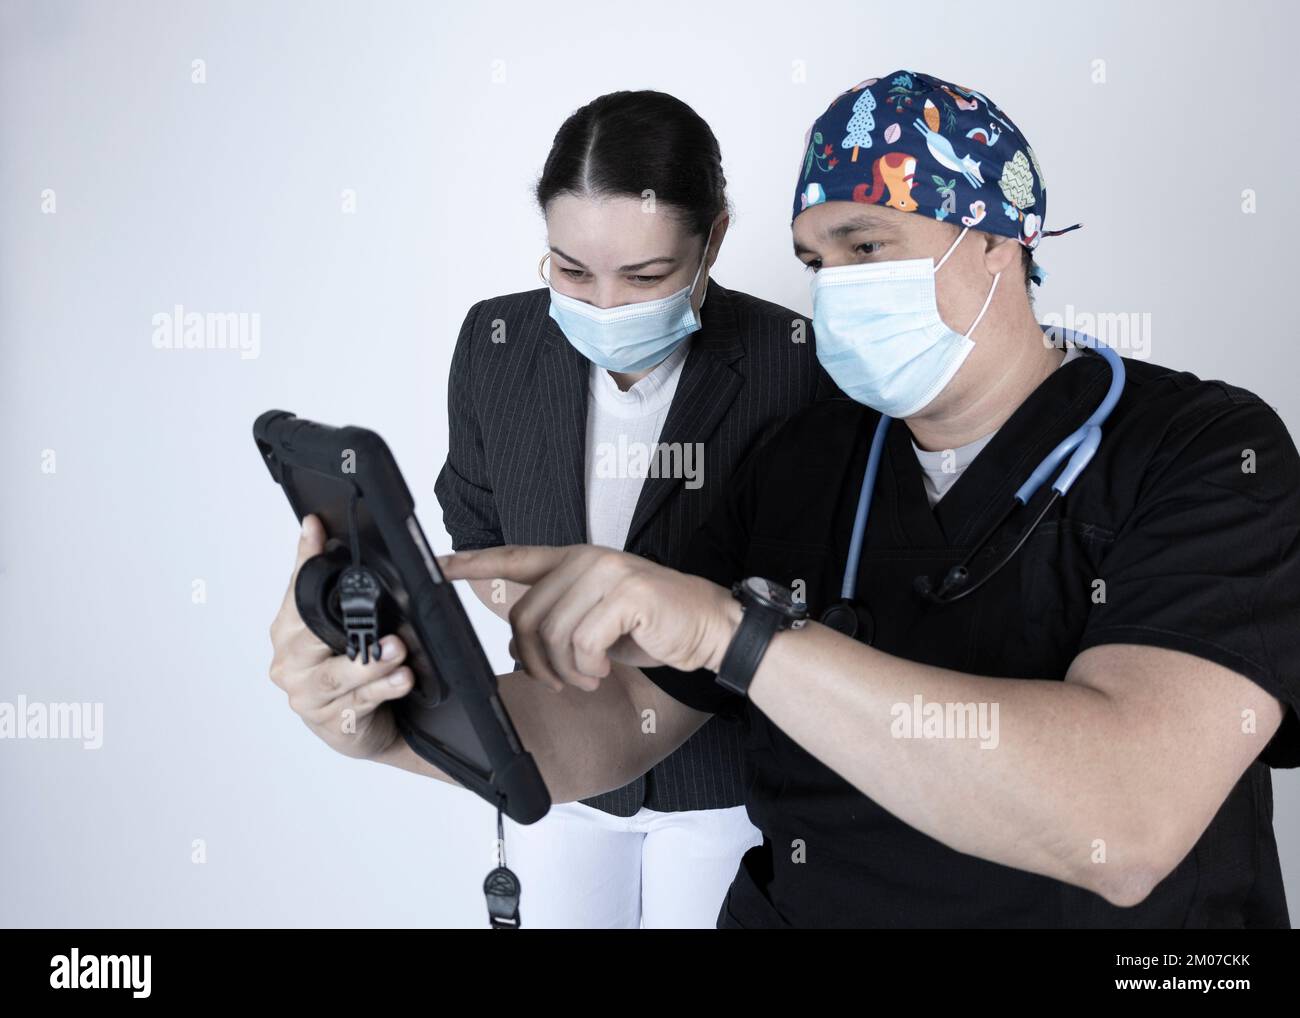 Médecin montrant une tablette à son patient tous deux portant des masques, montrant ou expliquant le contenu qu'il montre. Banque D'Images